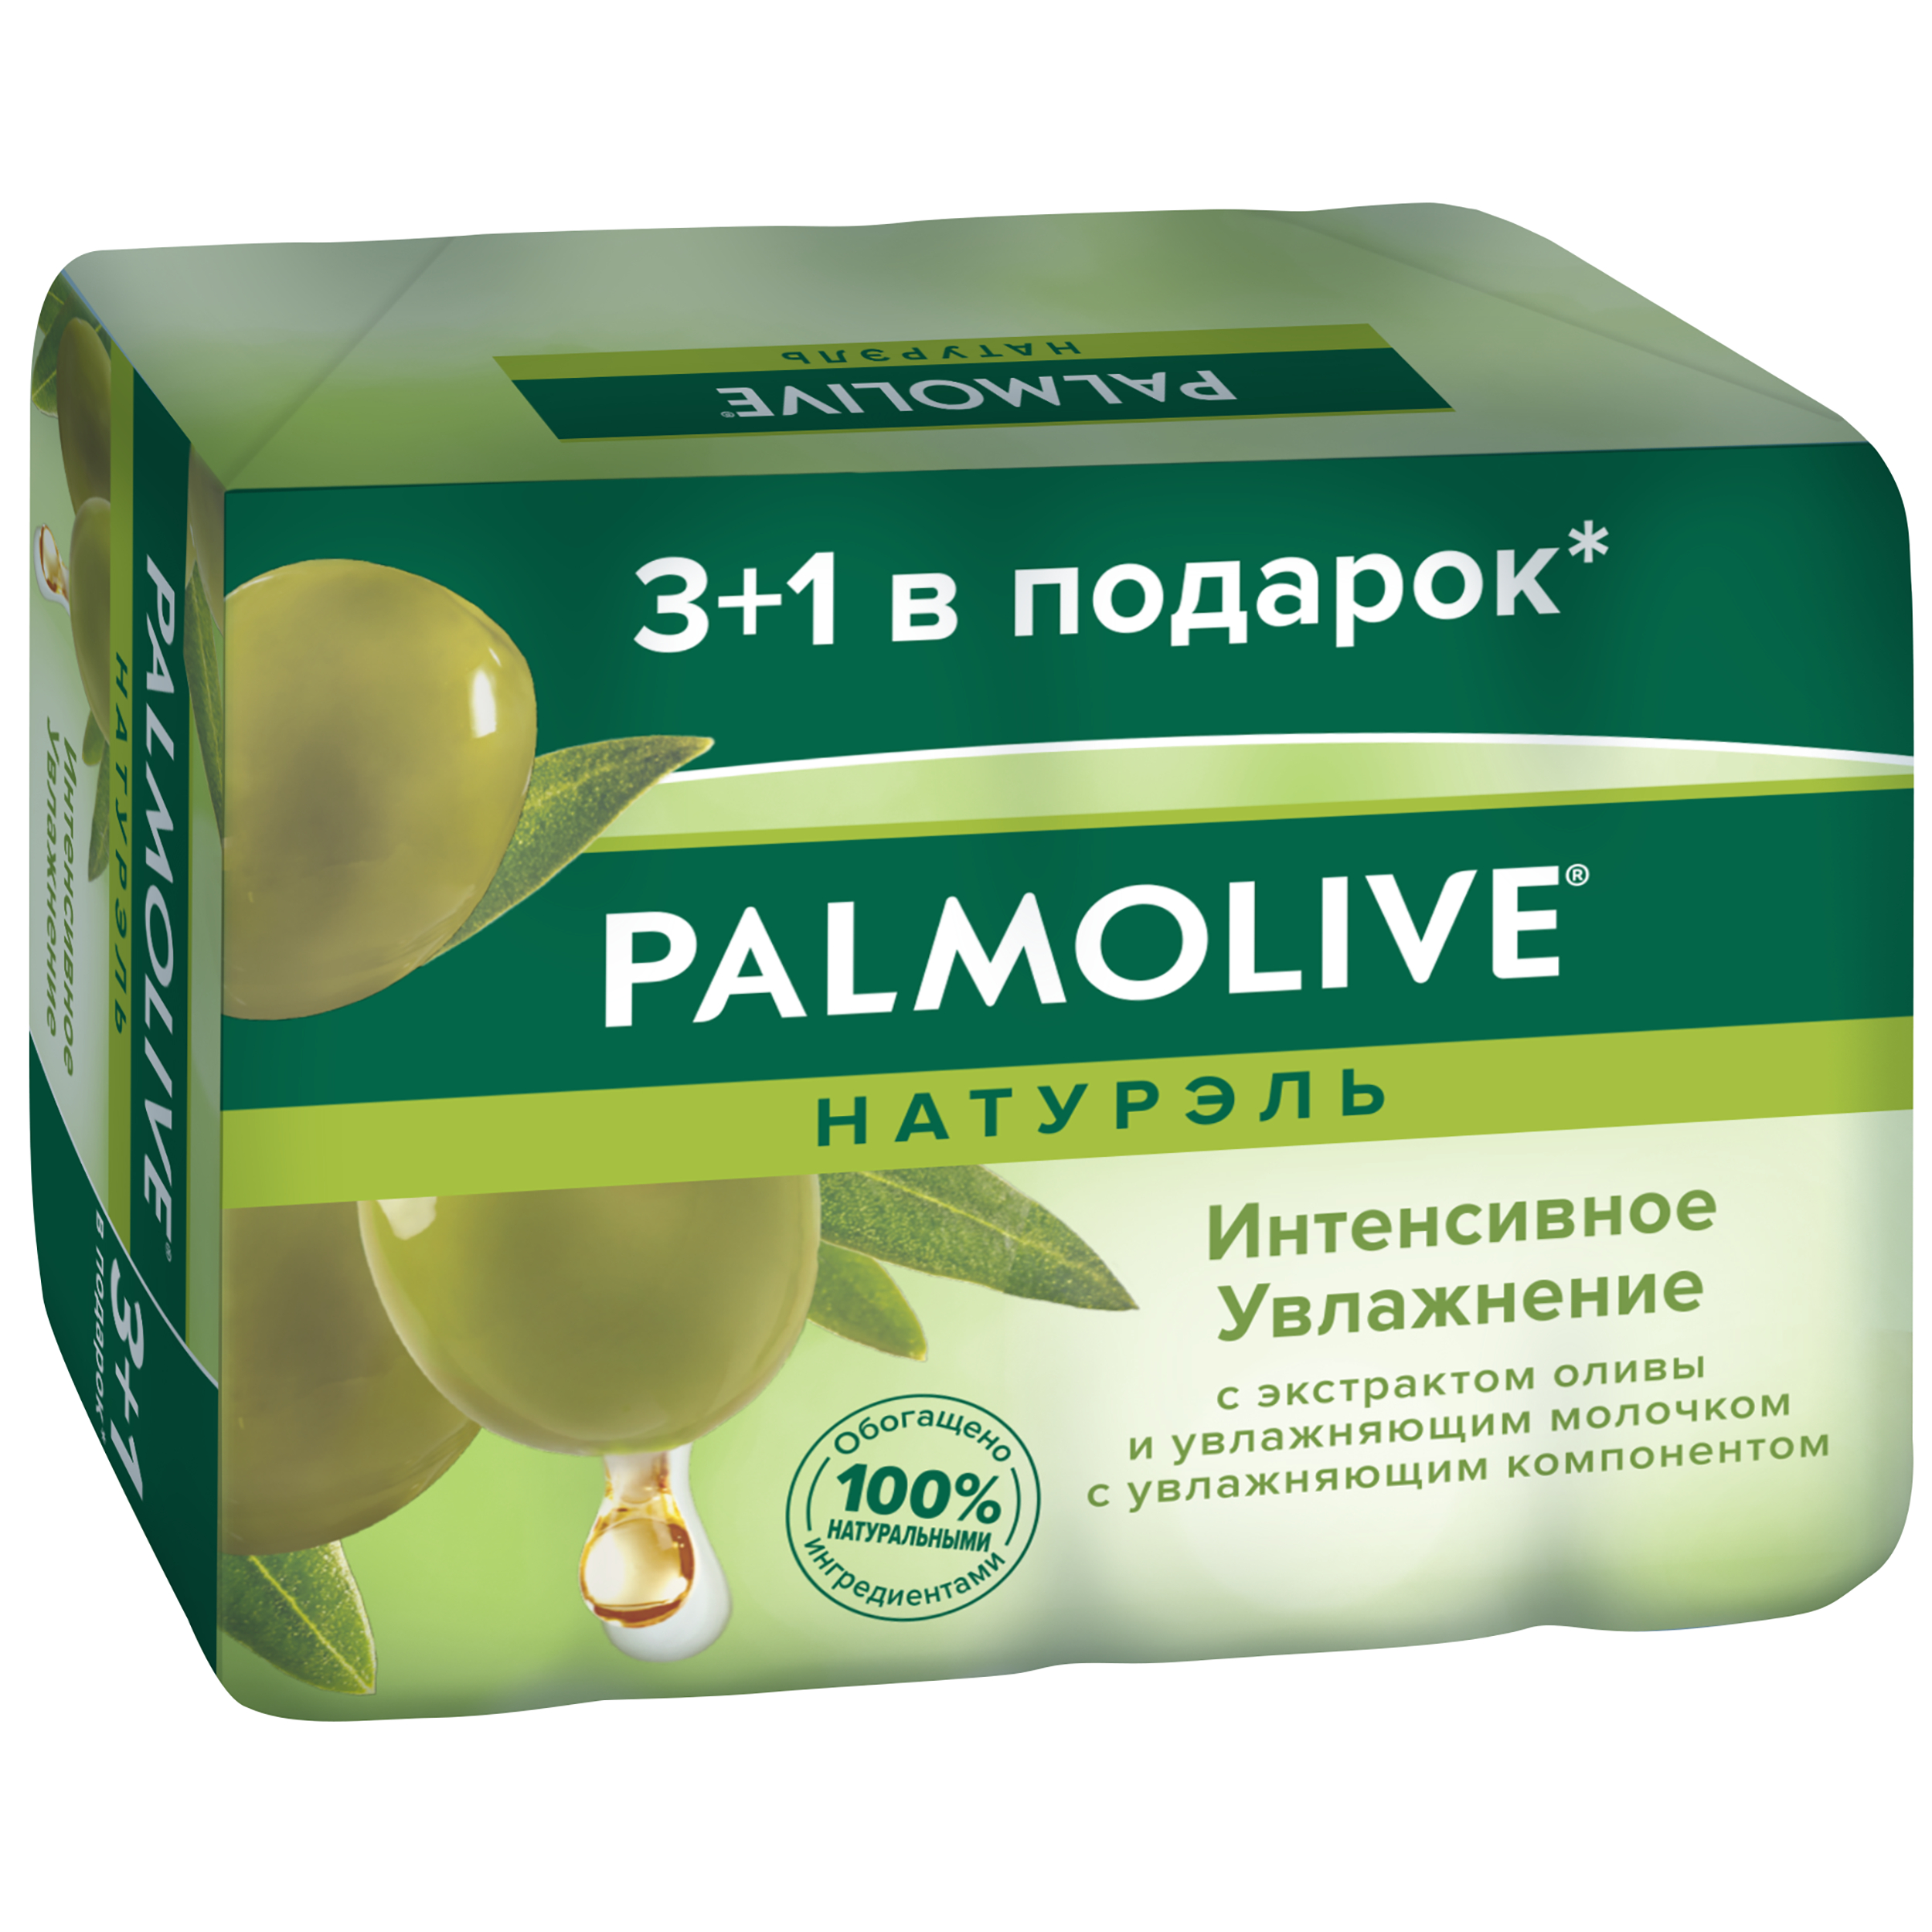 Косметическое мыло Palmolive Натурэль Интенсивное увлажнение с экстрактом оливы 4x90 г косметическое мыло palmolive натурэль роскошная мягкость 90гр